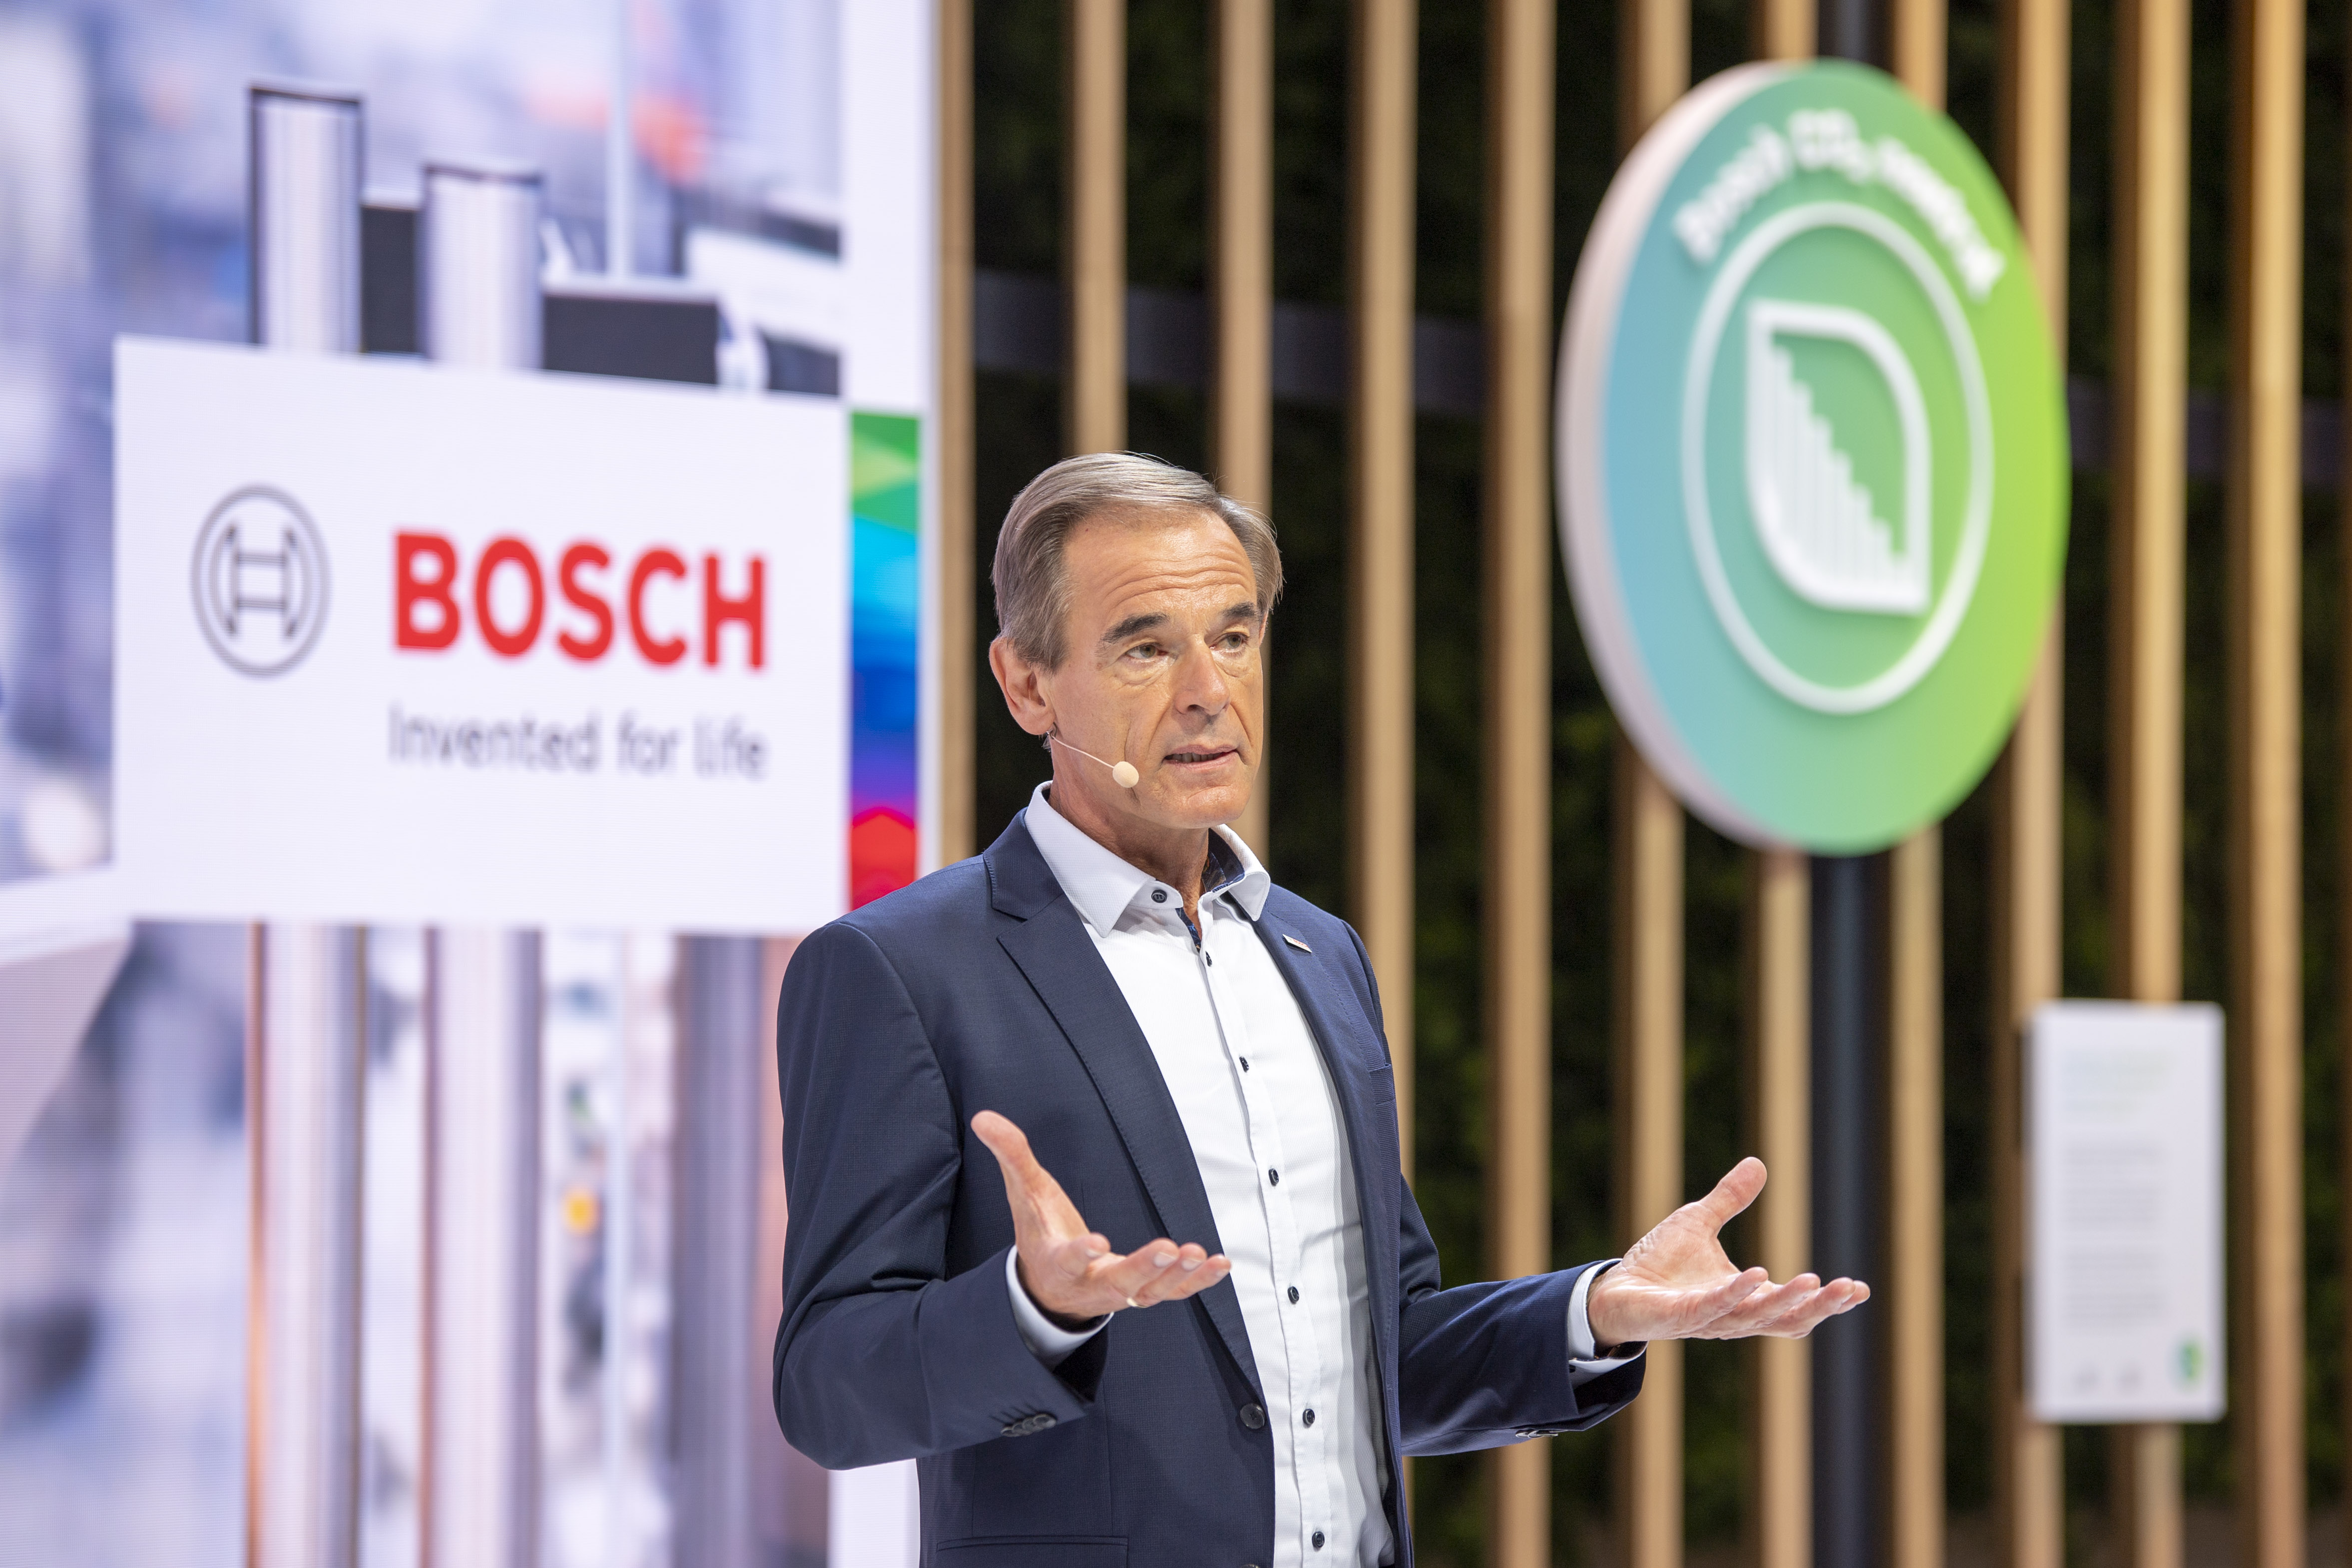 Bosch auf der IAA Mobility 2021